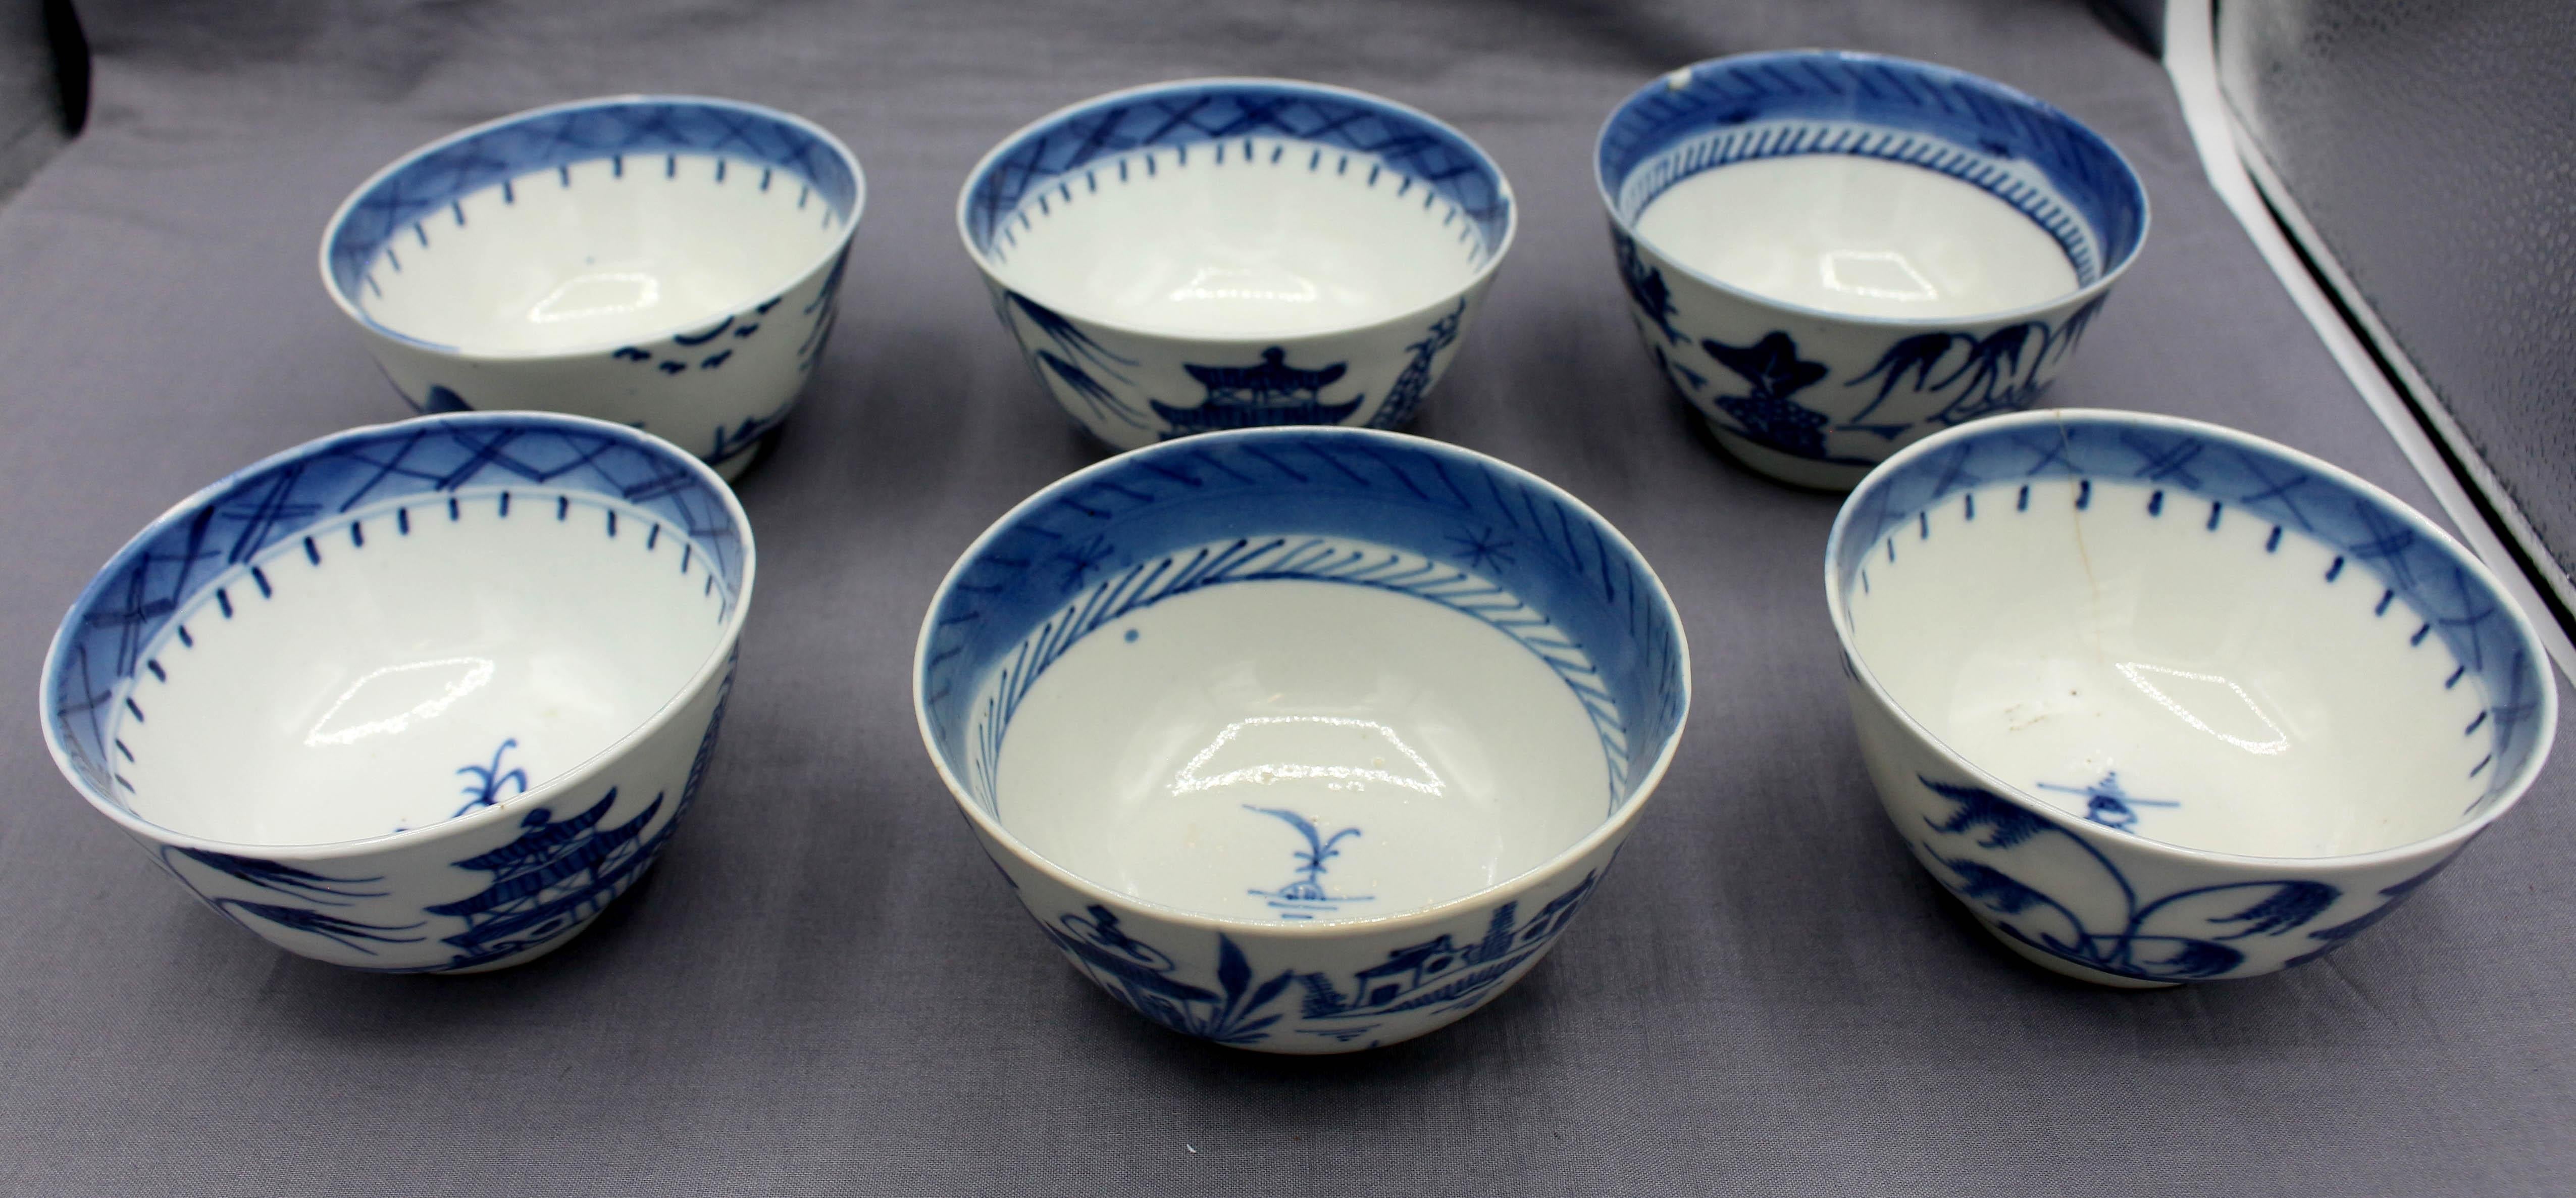 Groupe de 6 bols à riz ou à soupe en porcelaine bleue de Canton, exportation chinoise, milieu du 19e siècle. Quelques lignes de cheveux et entailles. Poterie fine et mince. 1 avec ébréchure ; 2 avec entaille mineure sur le bord ; 1 avec rugosité du